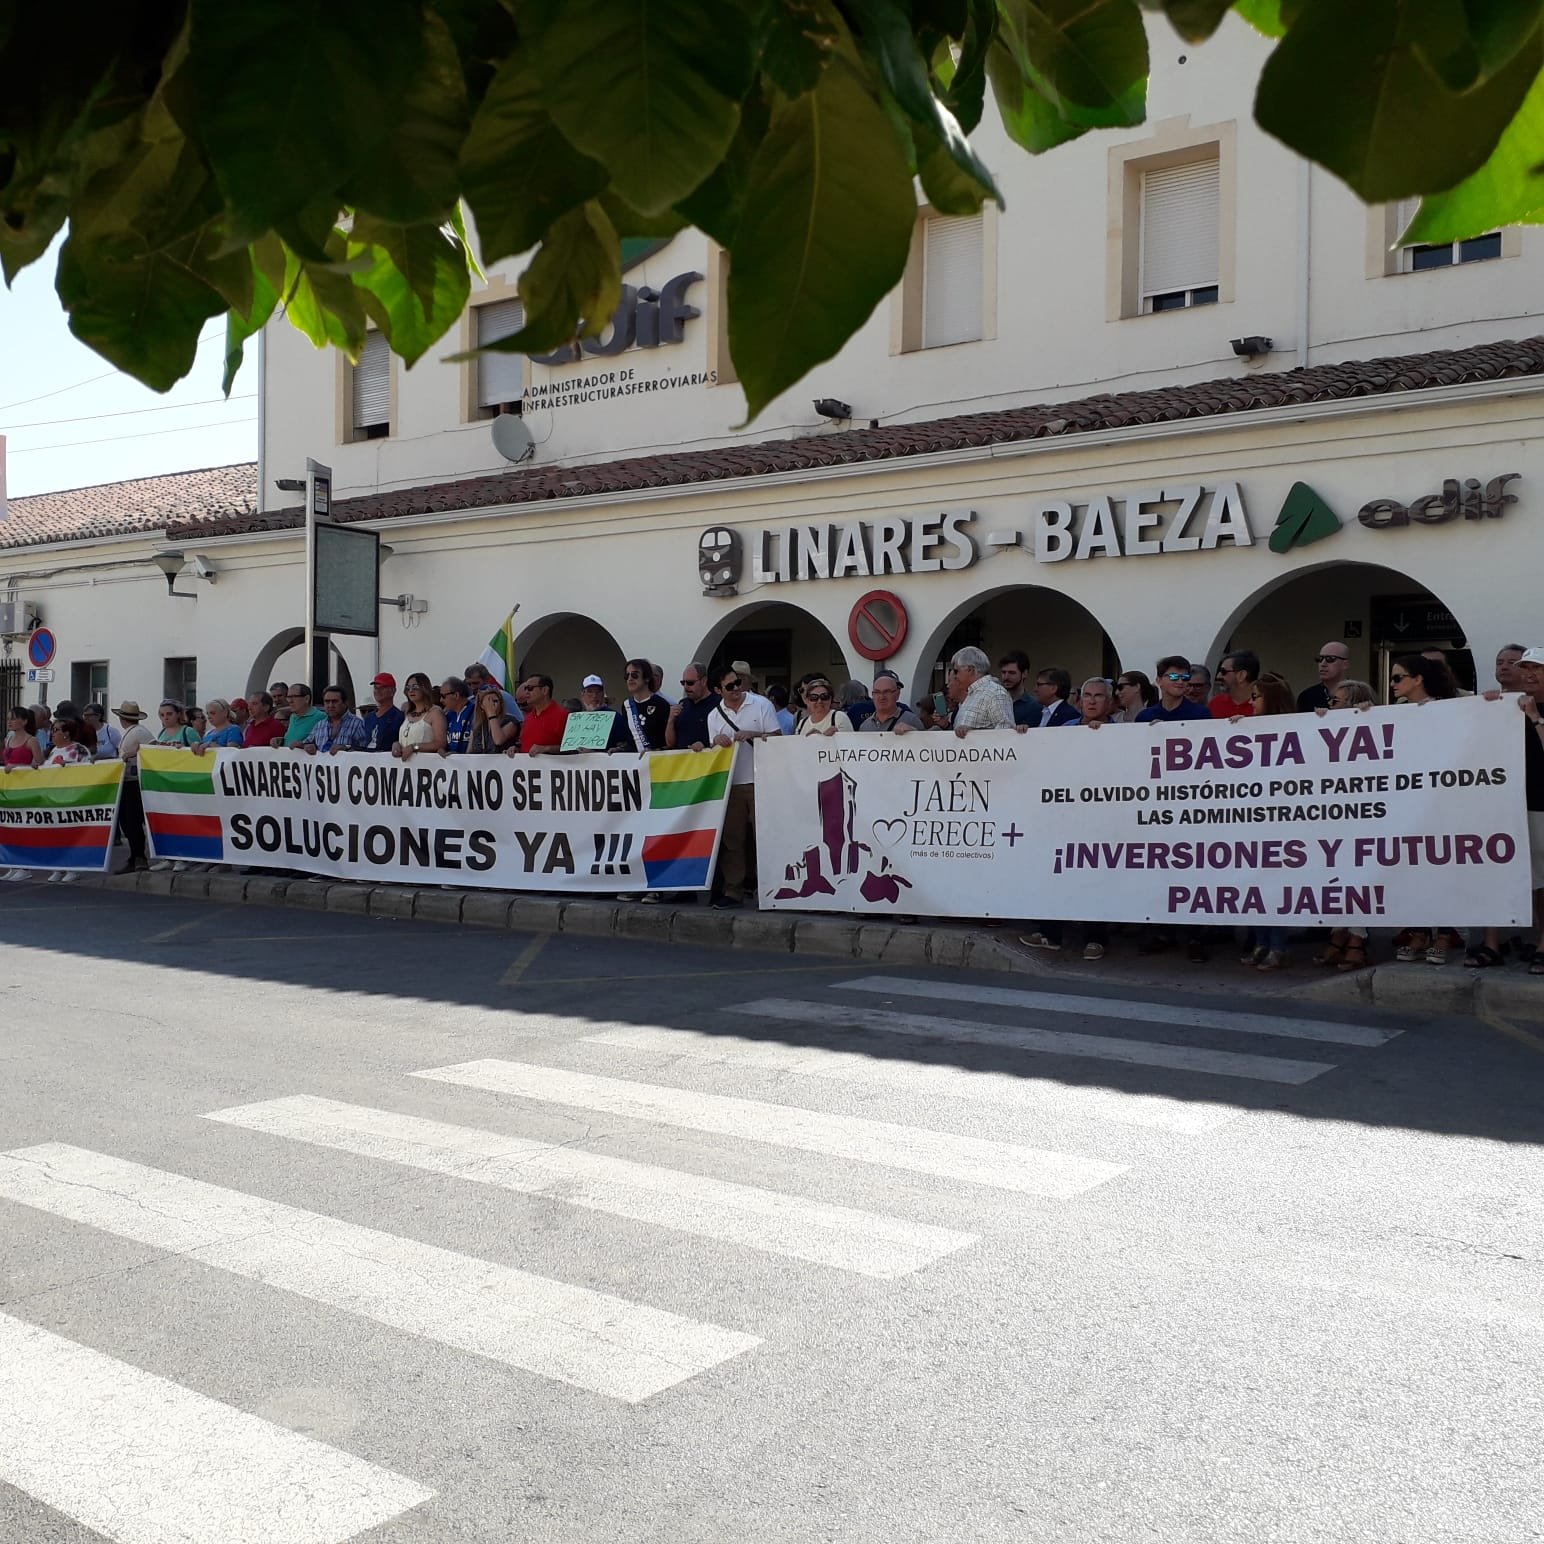 La Estación Linares-Baeza defiende sus trenes